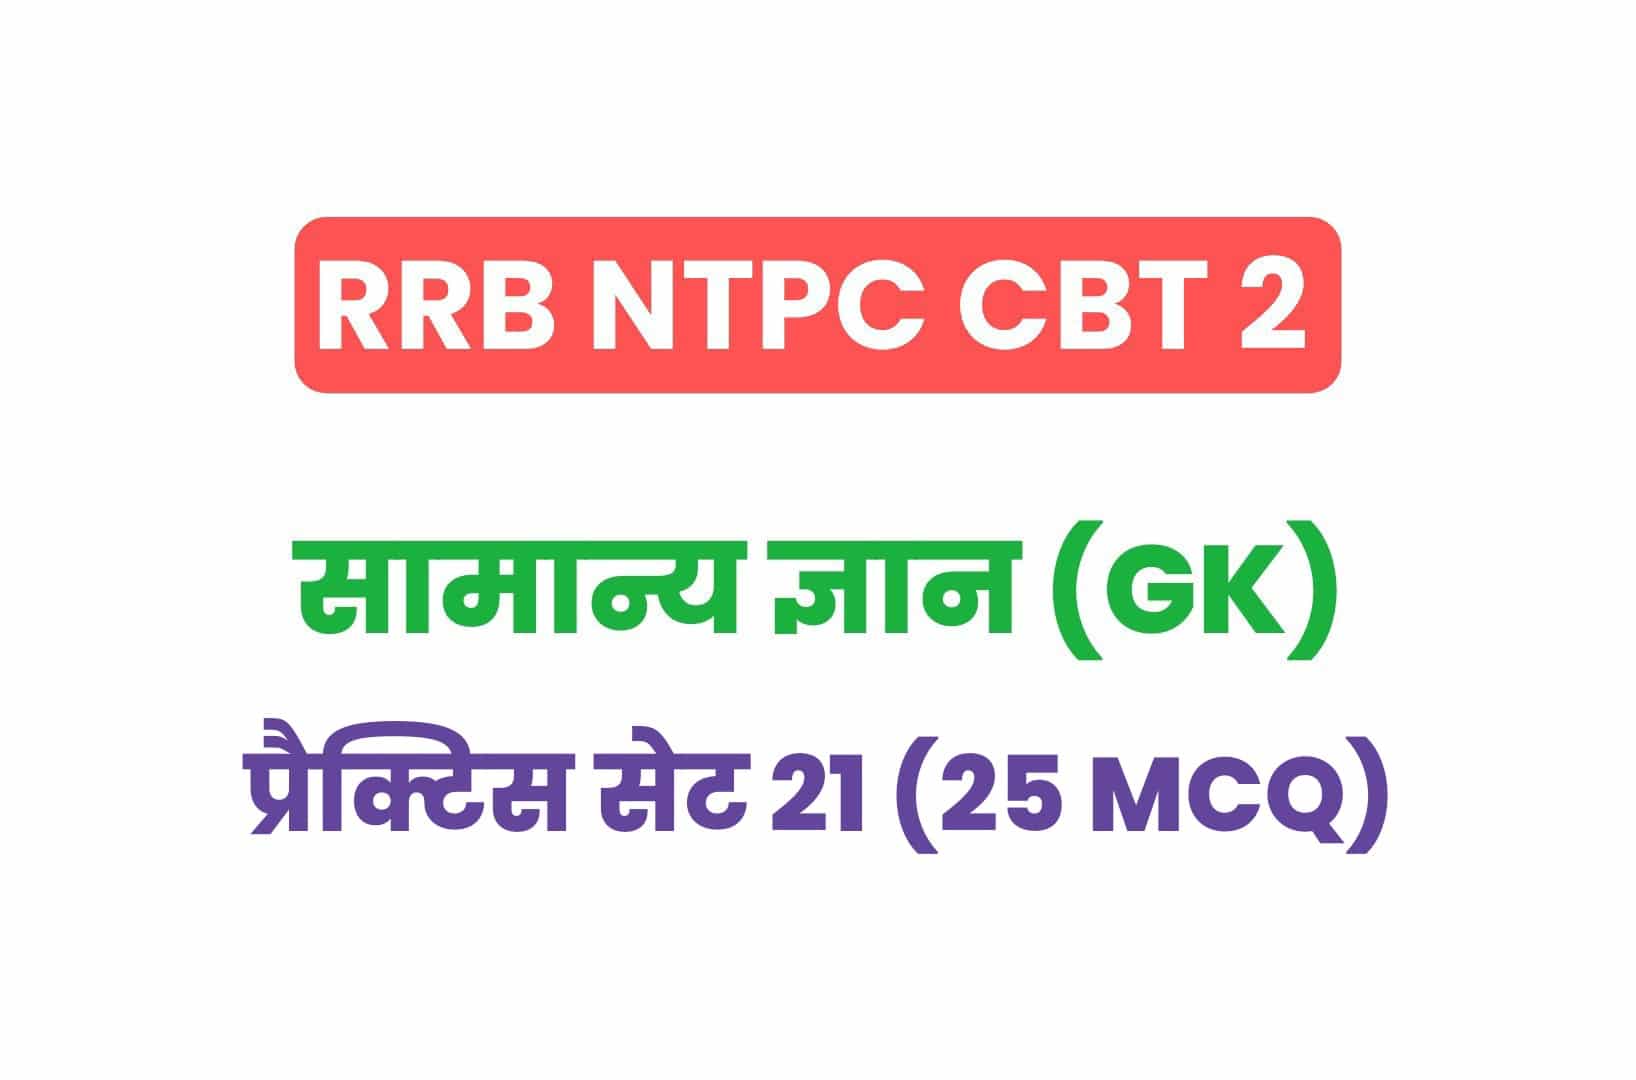 RRB NTPC CBT 2 GK प्रैक्टिस सेट 21: सामान्य ज्ञान के महत्वपूर्ण प्रश्नों का संग्रह, जरूर देखें